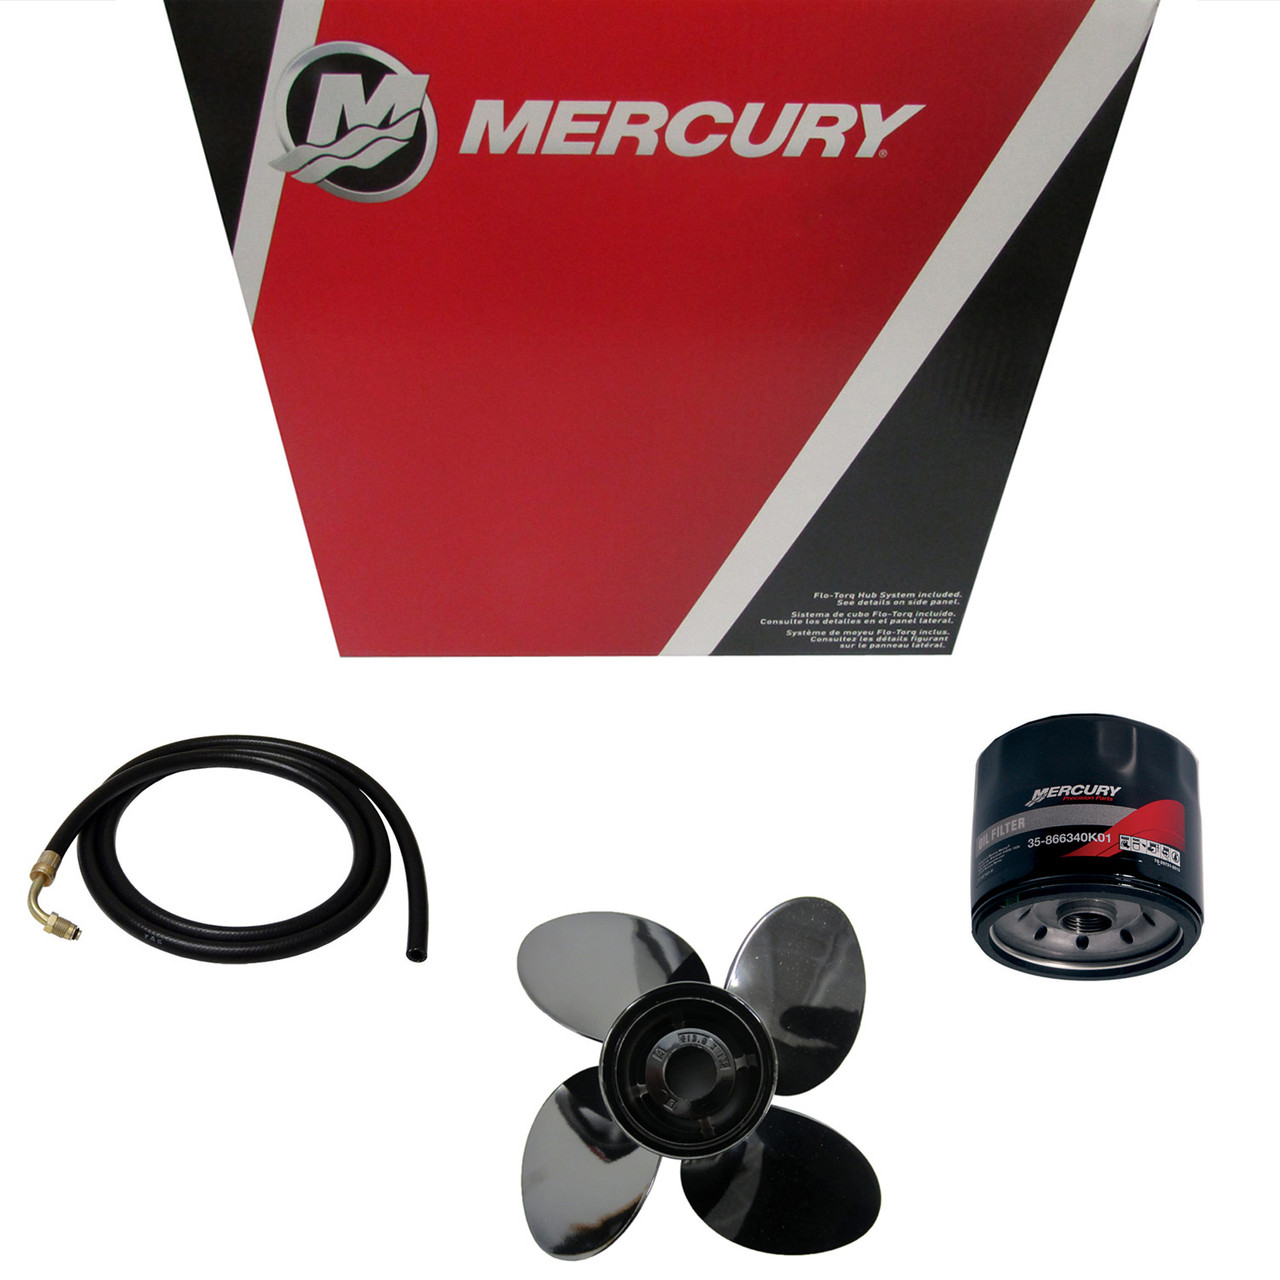 Mercury Marine / Mercruiser New OEM Lube-Chain 12, 92-8M0130608